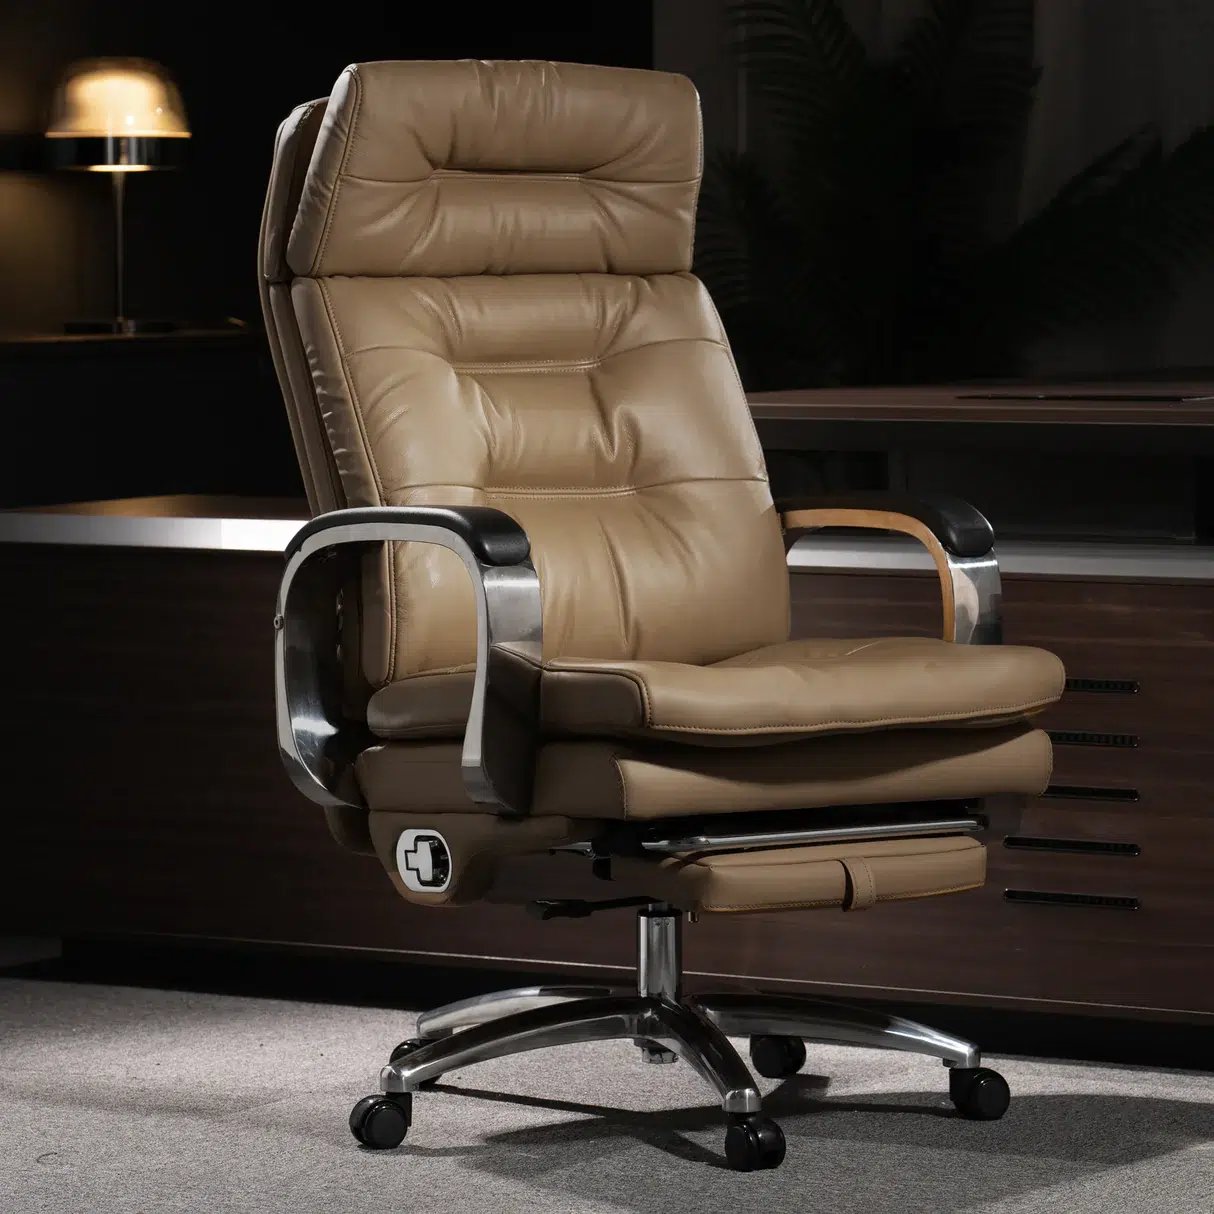 Vane Massage office chairs - beauty, ergonomics and style